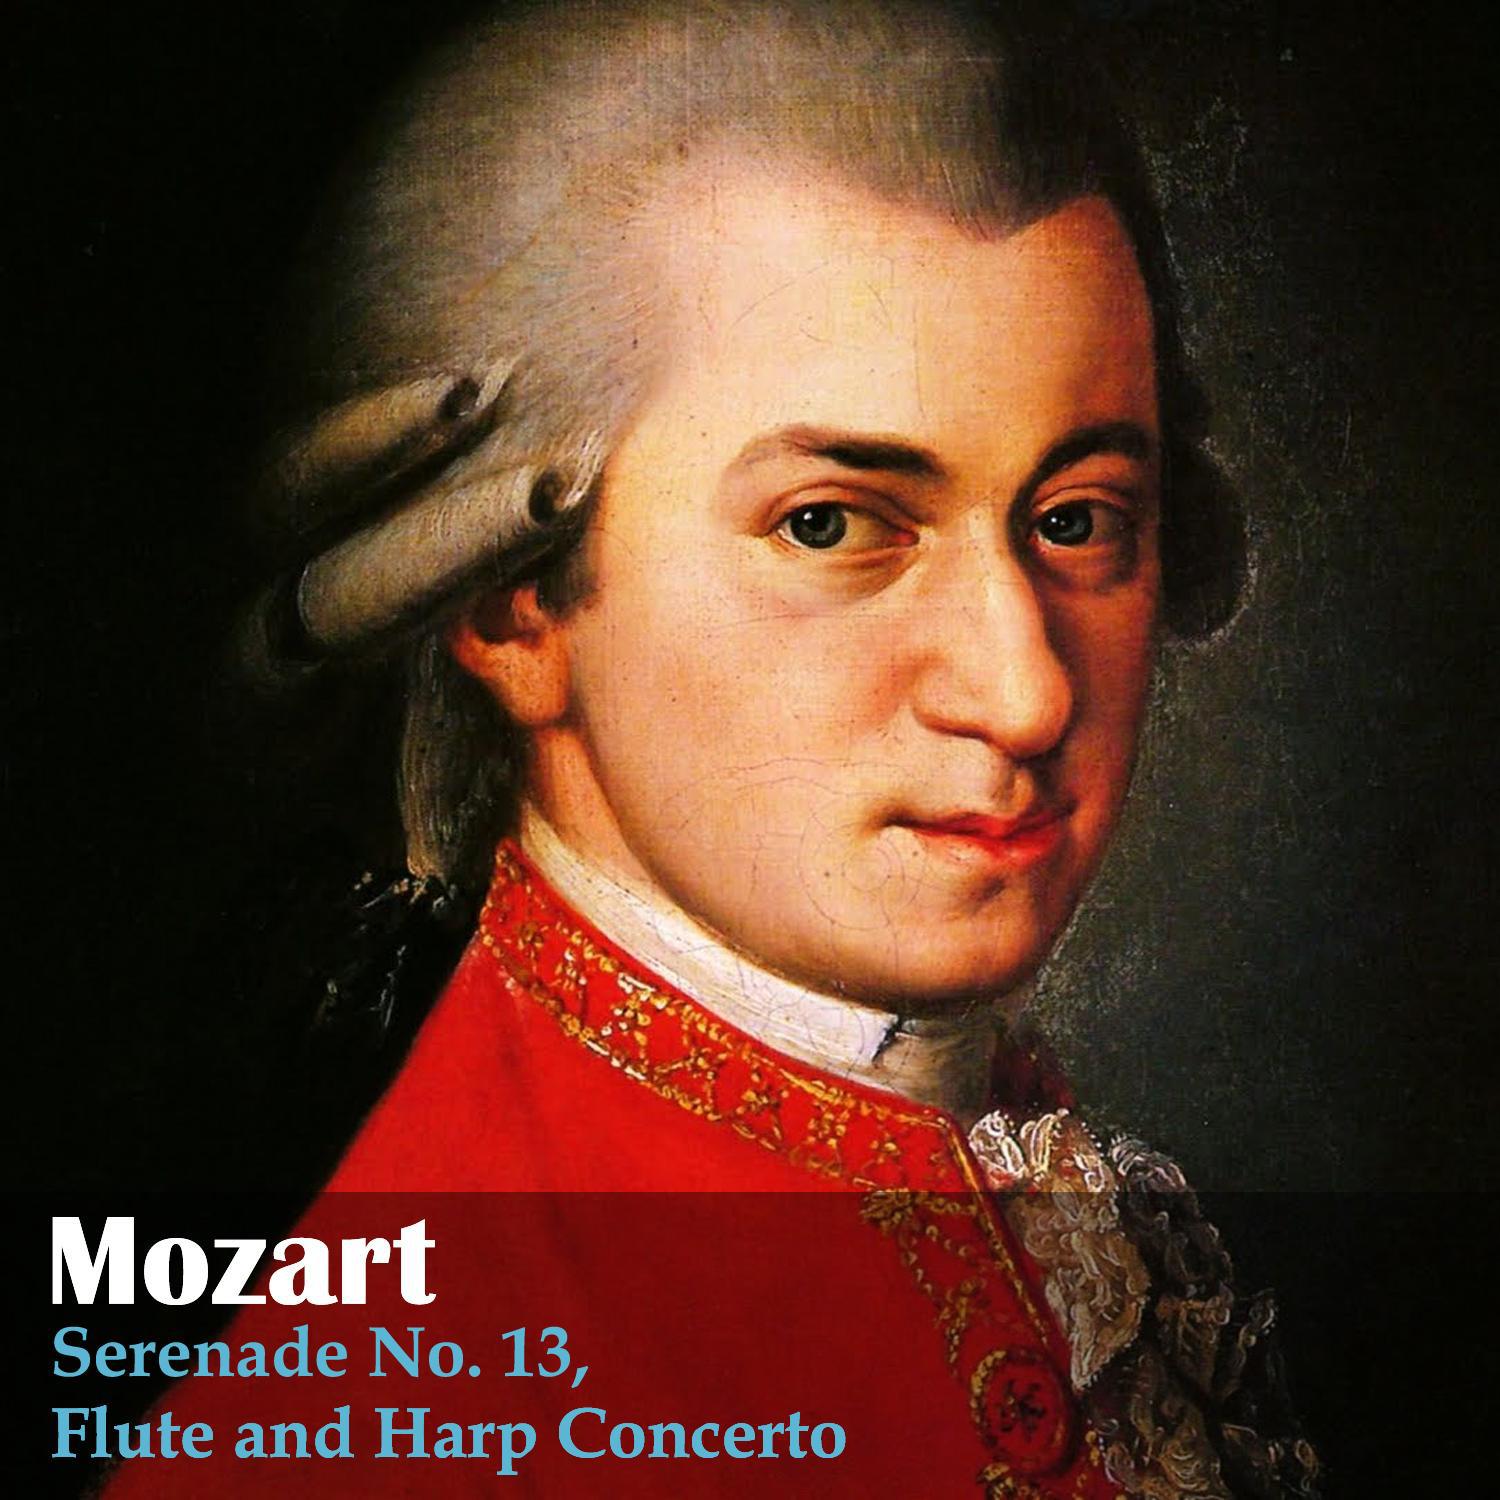 Mozart: Serenade No. 13, Flute and Harp Concerto